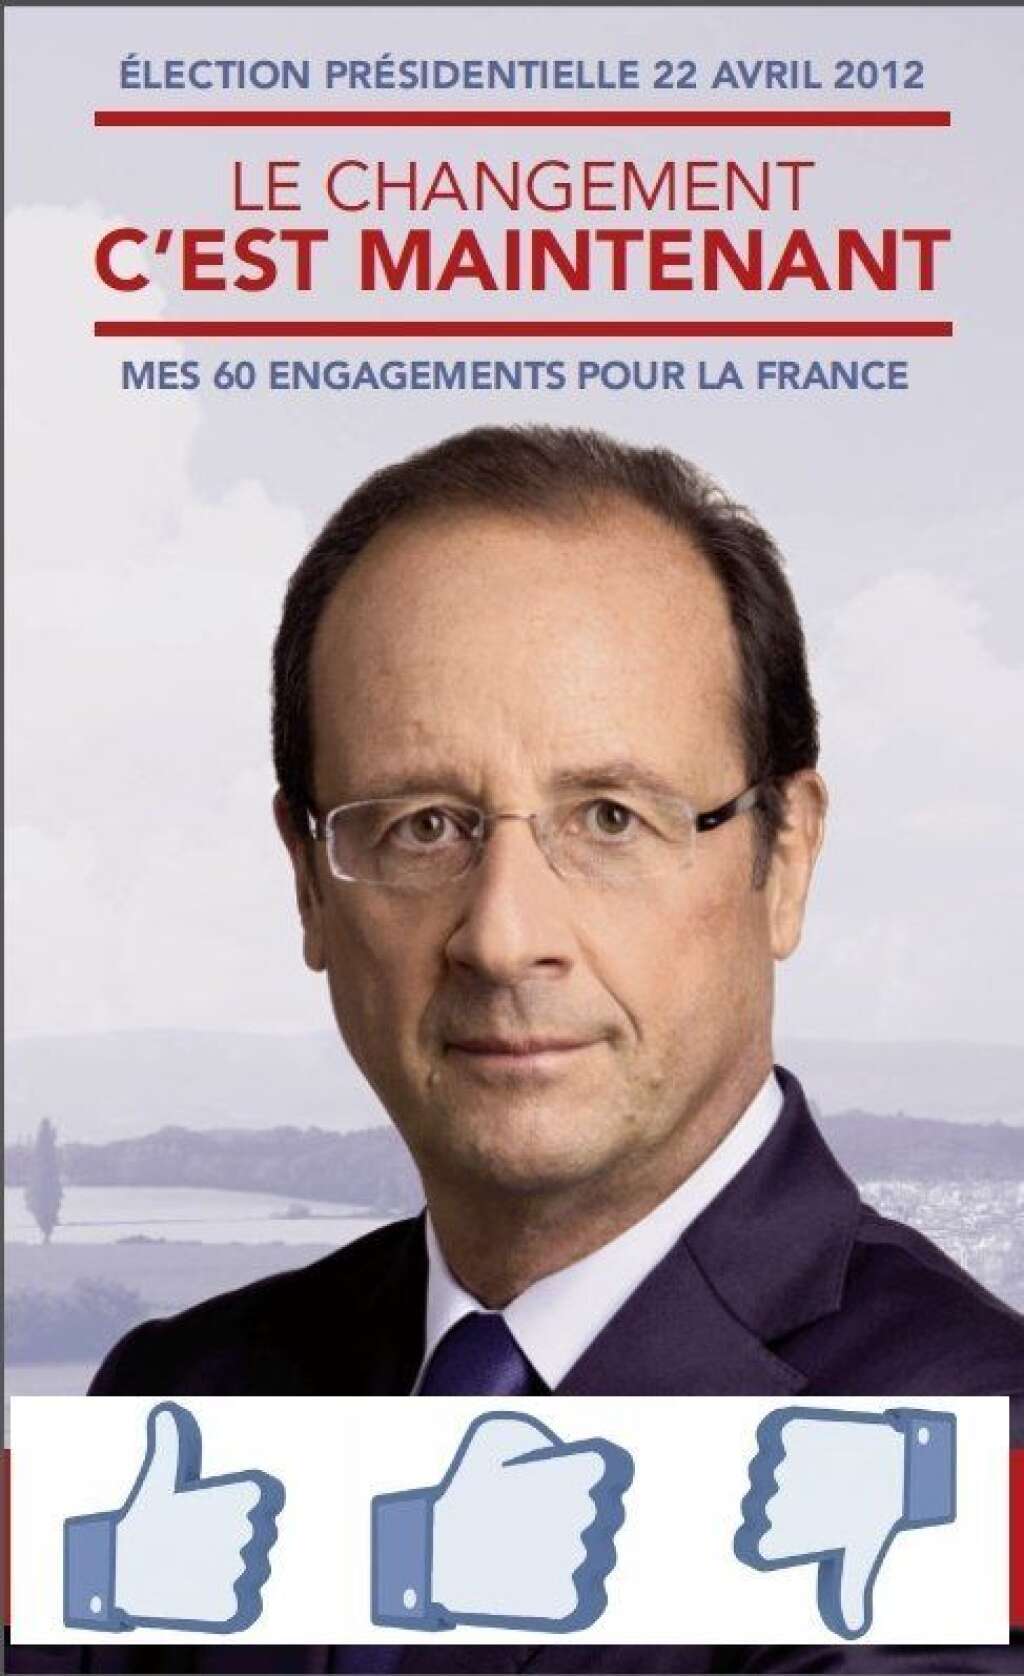 60 engagements, 200 promesses... Et maintenant? - <p>Le 6 mai 2012, François Hollande était élu président de la République. Son programme? 60 engagements, un peu moins de 200 promesses. Notre bilan.</p>  <p><img alt="like" src="http://i.huffpost.com/gen/1104504/thumbs/s-LIKE-small.jpg?3 " style="float:left;" />Promesse tenue ou presque<br /> <br /> <br /> <br /> <br /> <img alt="equal" src="http://i.huffpost.com/gen/1104500/thumbs/s-EQUAL-small.jpg?6 " style="float:left;" />Promesse en cours ou pas encore abordée<br /> <br /> <br /> <br /> <img alt="unlike" src="http://i.huffpost.com/gen/1104509/thumbs/s-UNLIKE-small.jpg?6 " style="float:left;" />Promesse abandonnée</p>